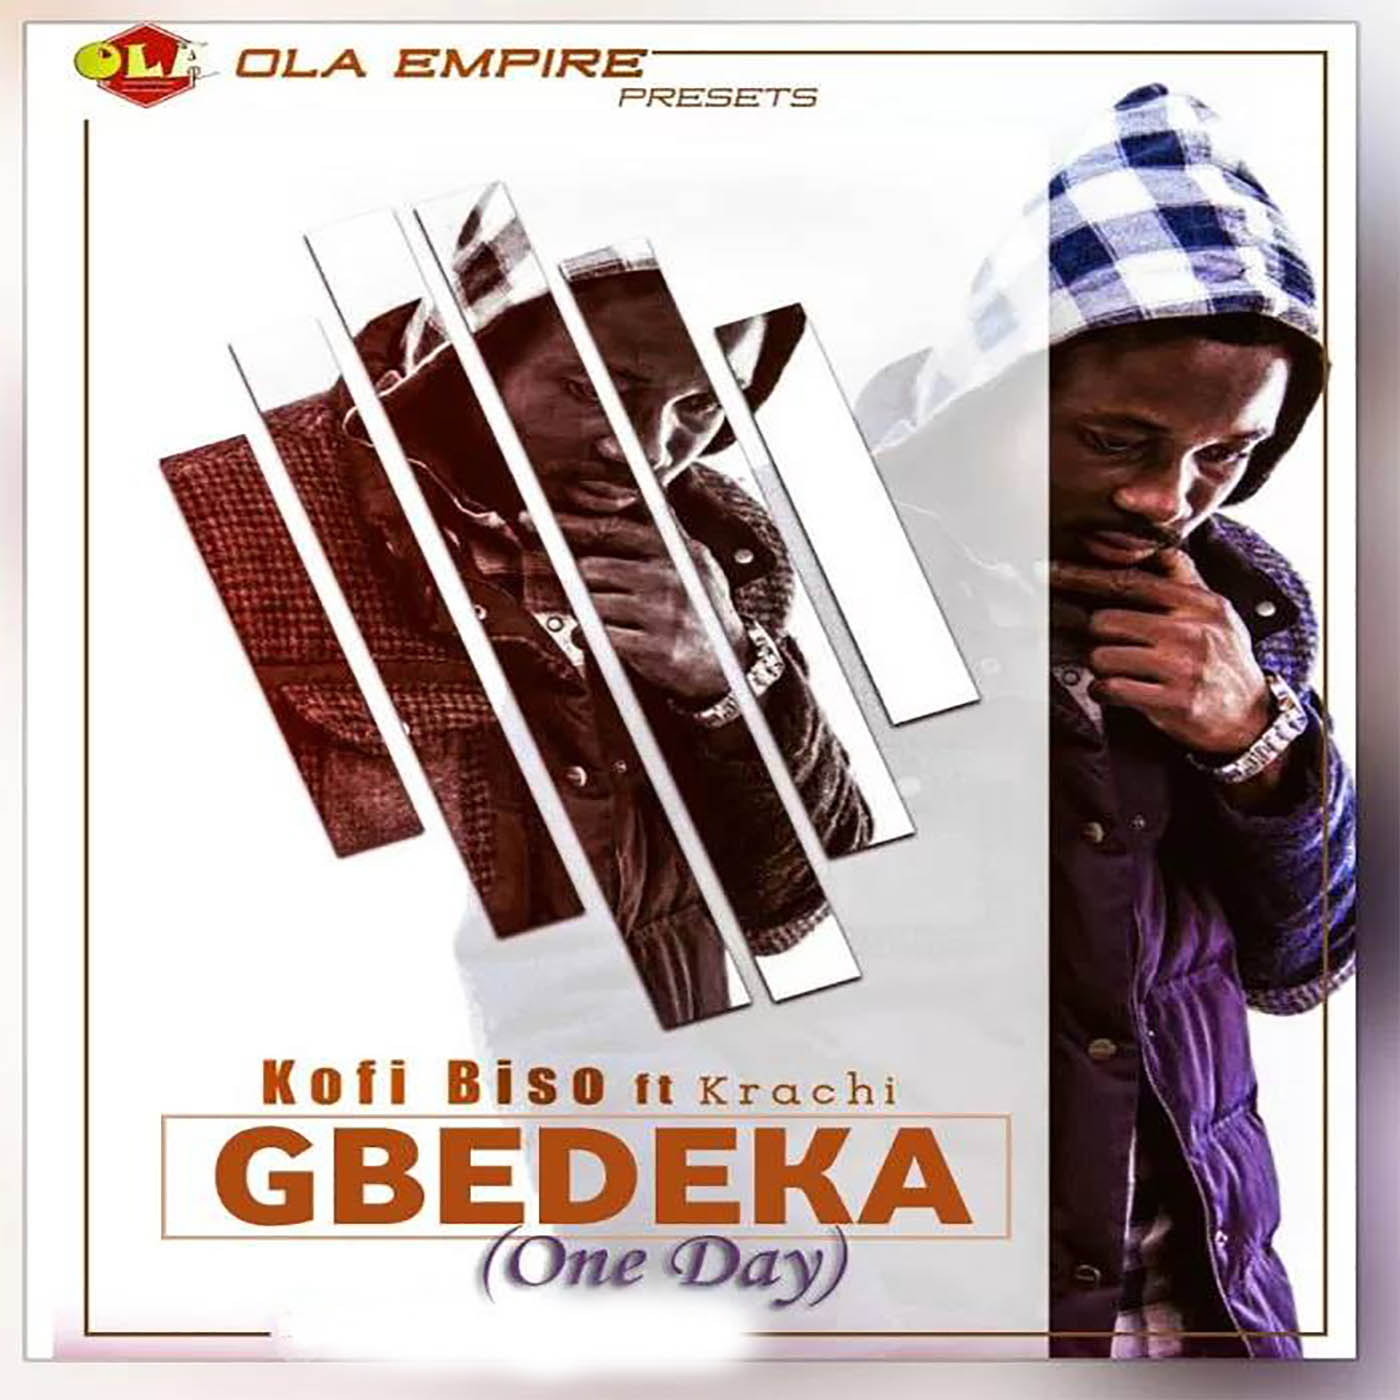 kofi biso - gbedeka (art cover)